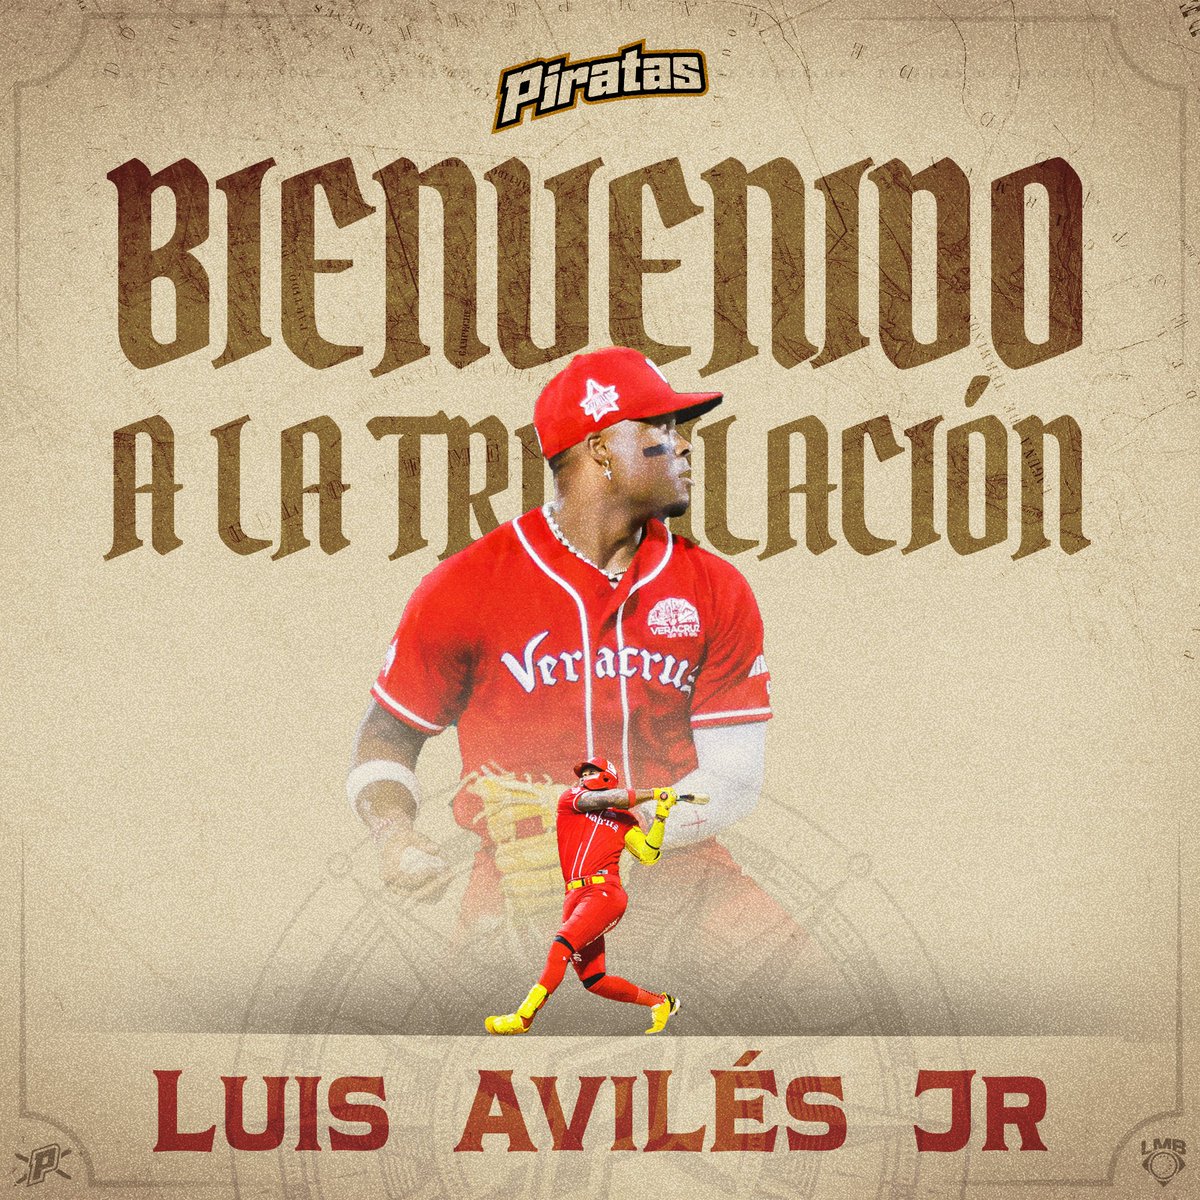 ¡Bienvenido @LJaviles99_Jr! 🇨🇺⚾️ Solidez a la defensiva y poder en los batazos, ¡Con tu energía ganaremos muchas batallas! 👏🏼🏴‍☠️ Llega a cambio por Wendell Rijo 🔁 @elaguilabeisbol #TodosABordo